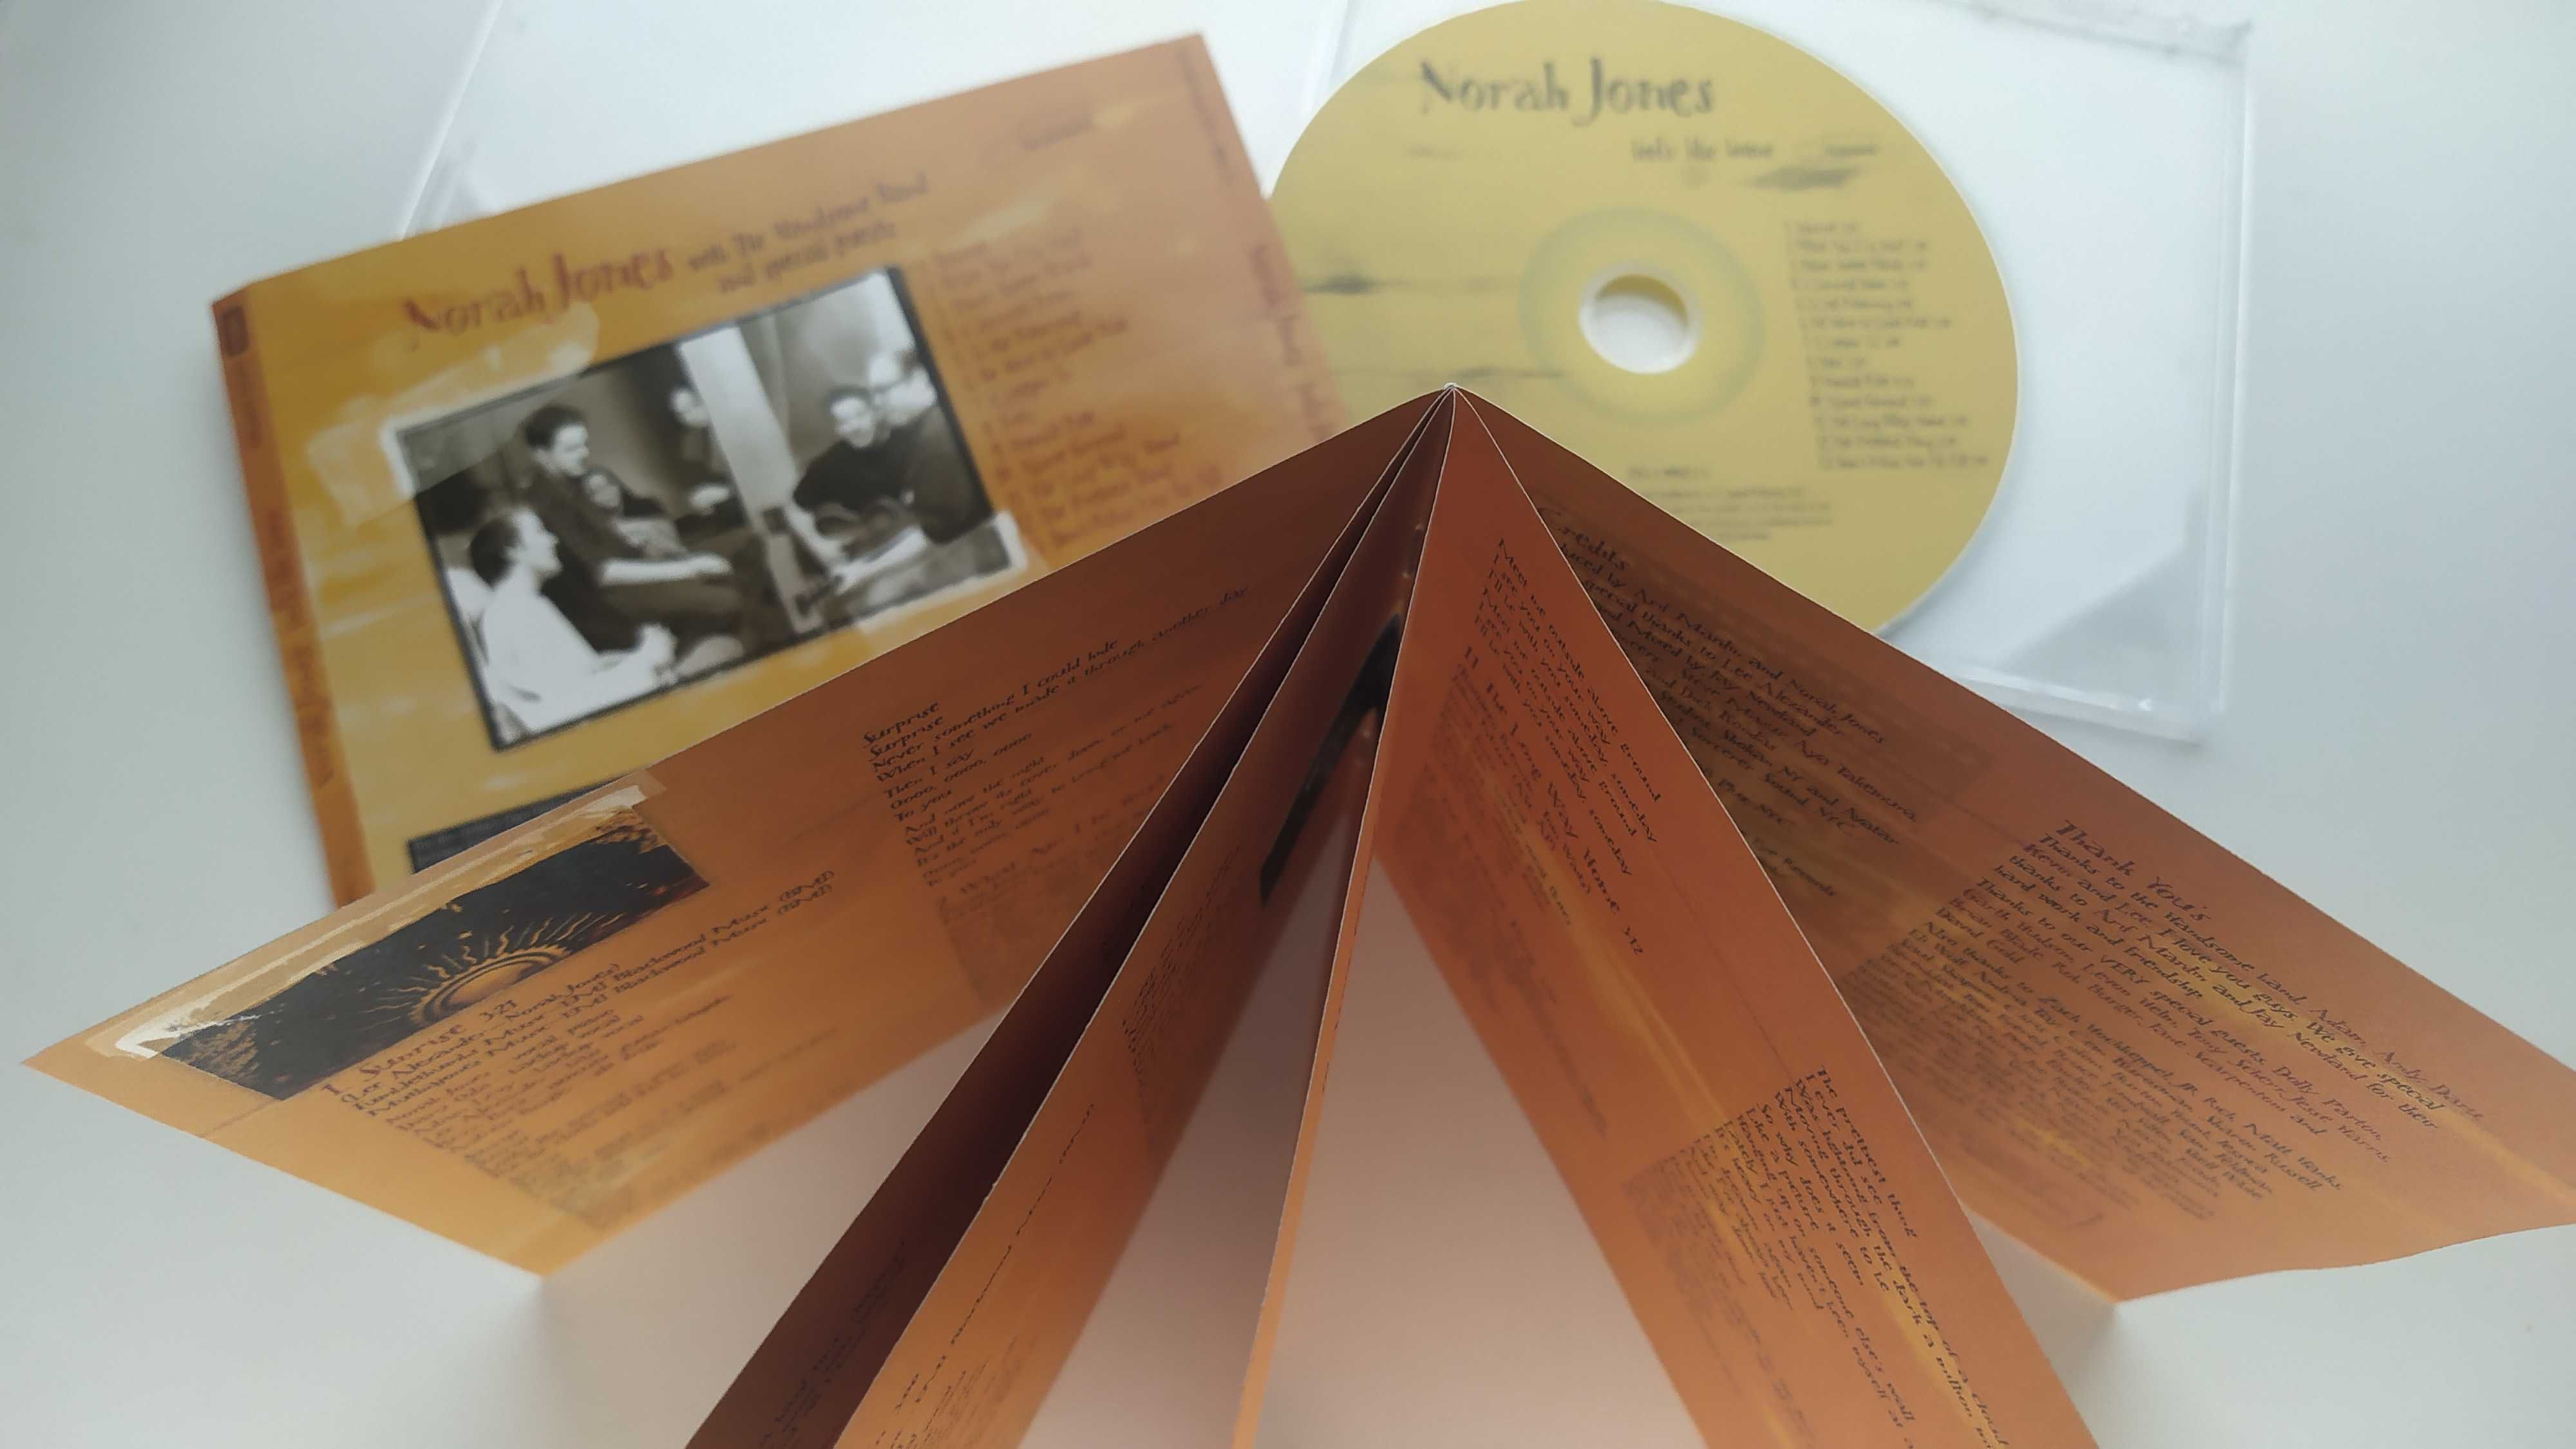 Norah Jones feels like home CD